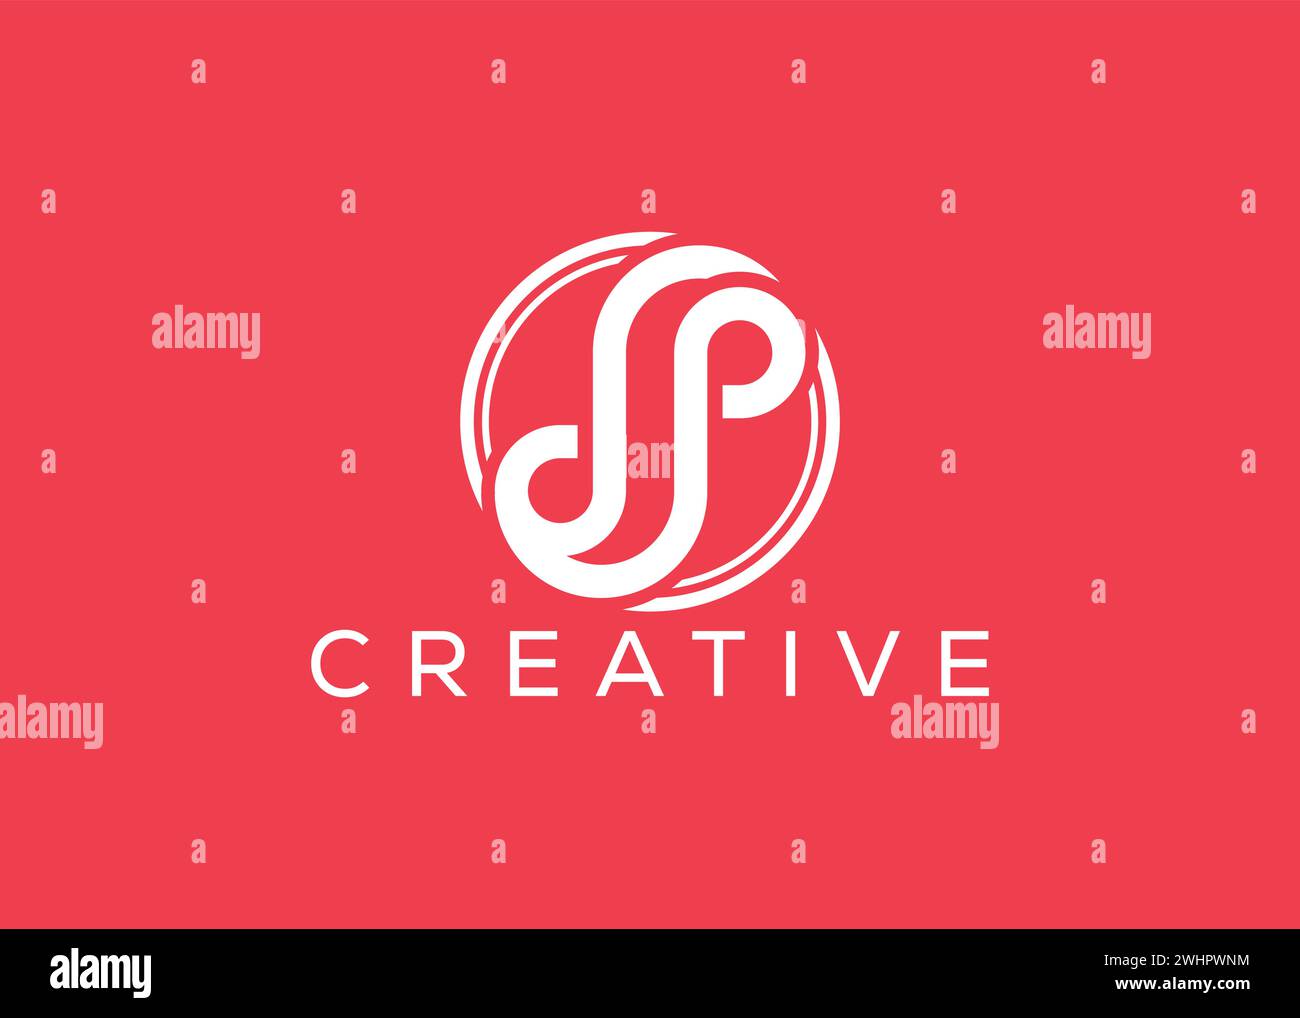 Minimalist letter S logo design vector template. Creative modern letter S logo Stock Vector